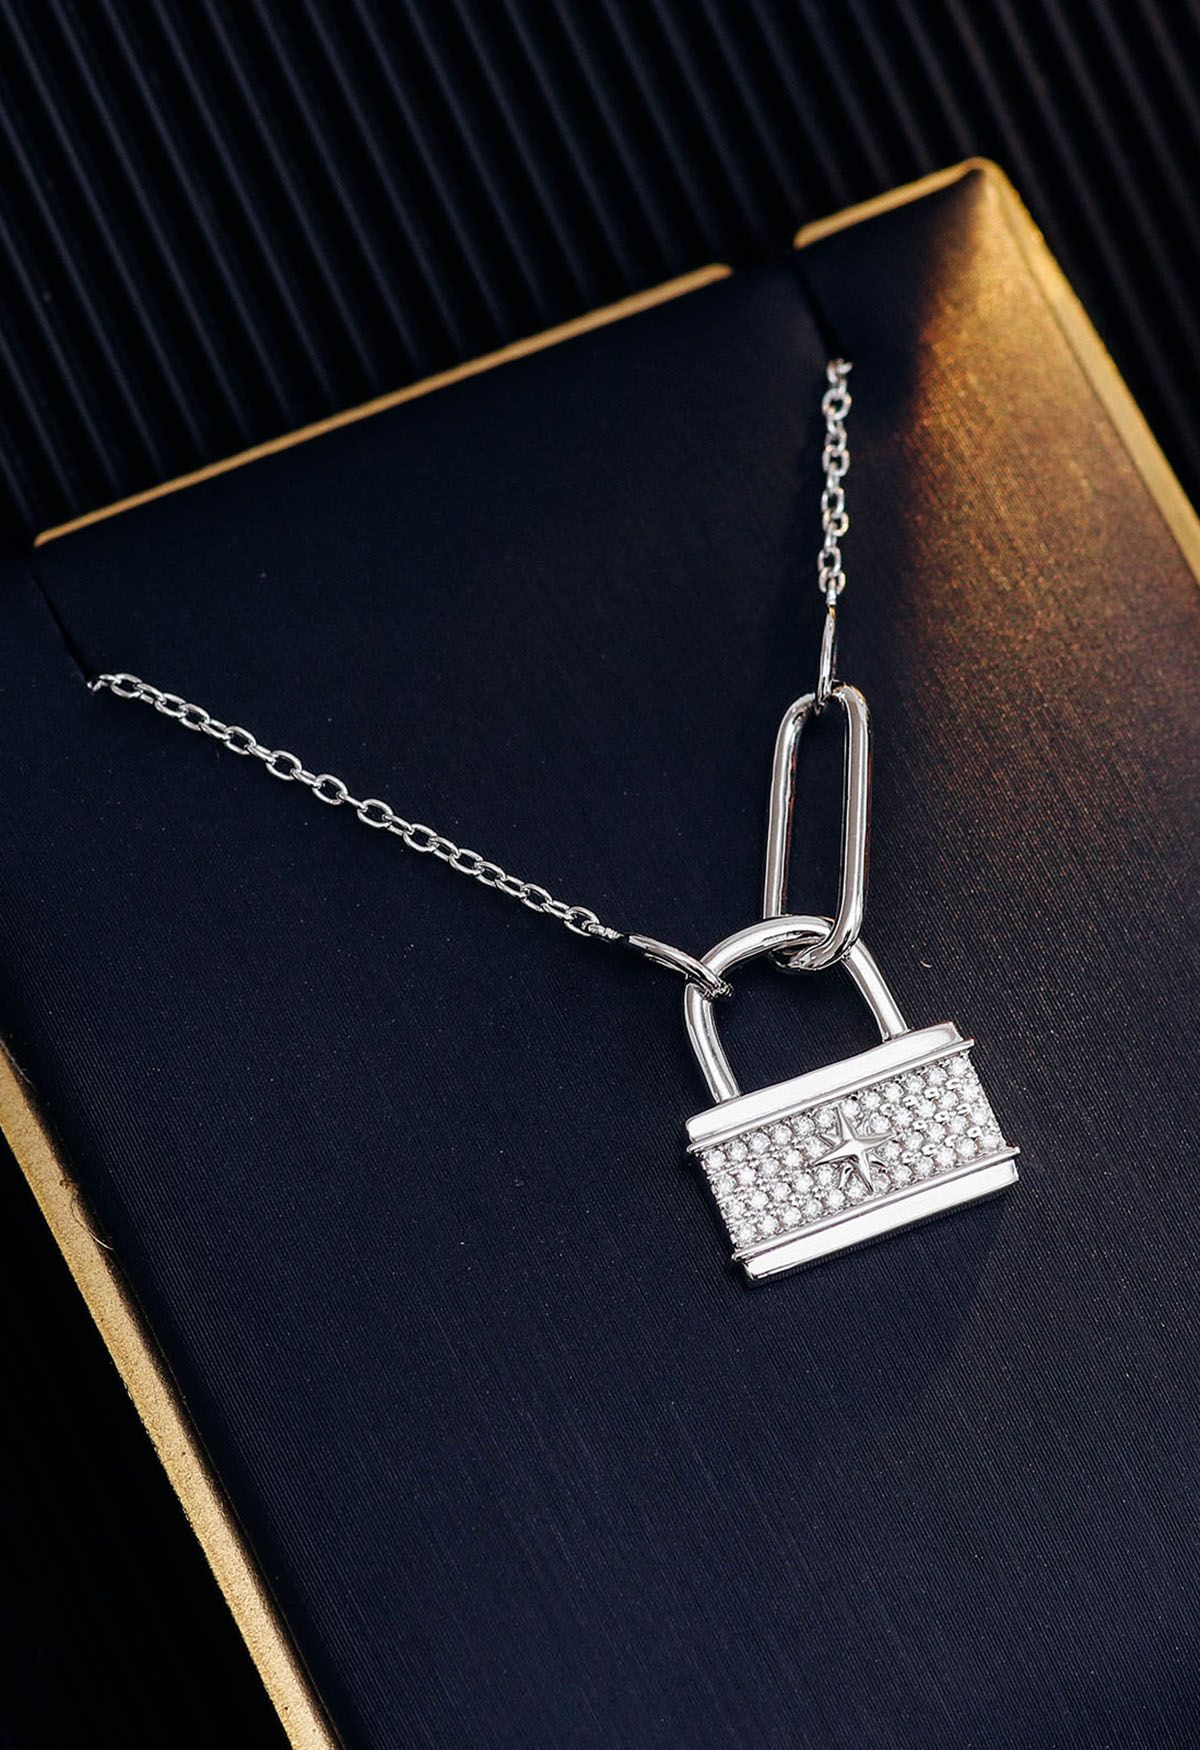 Star Lock Moissanite Diamond Necklace - Retro, Indie and Unique Fashion